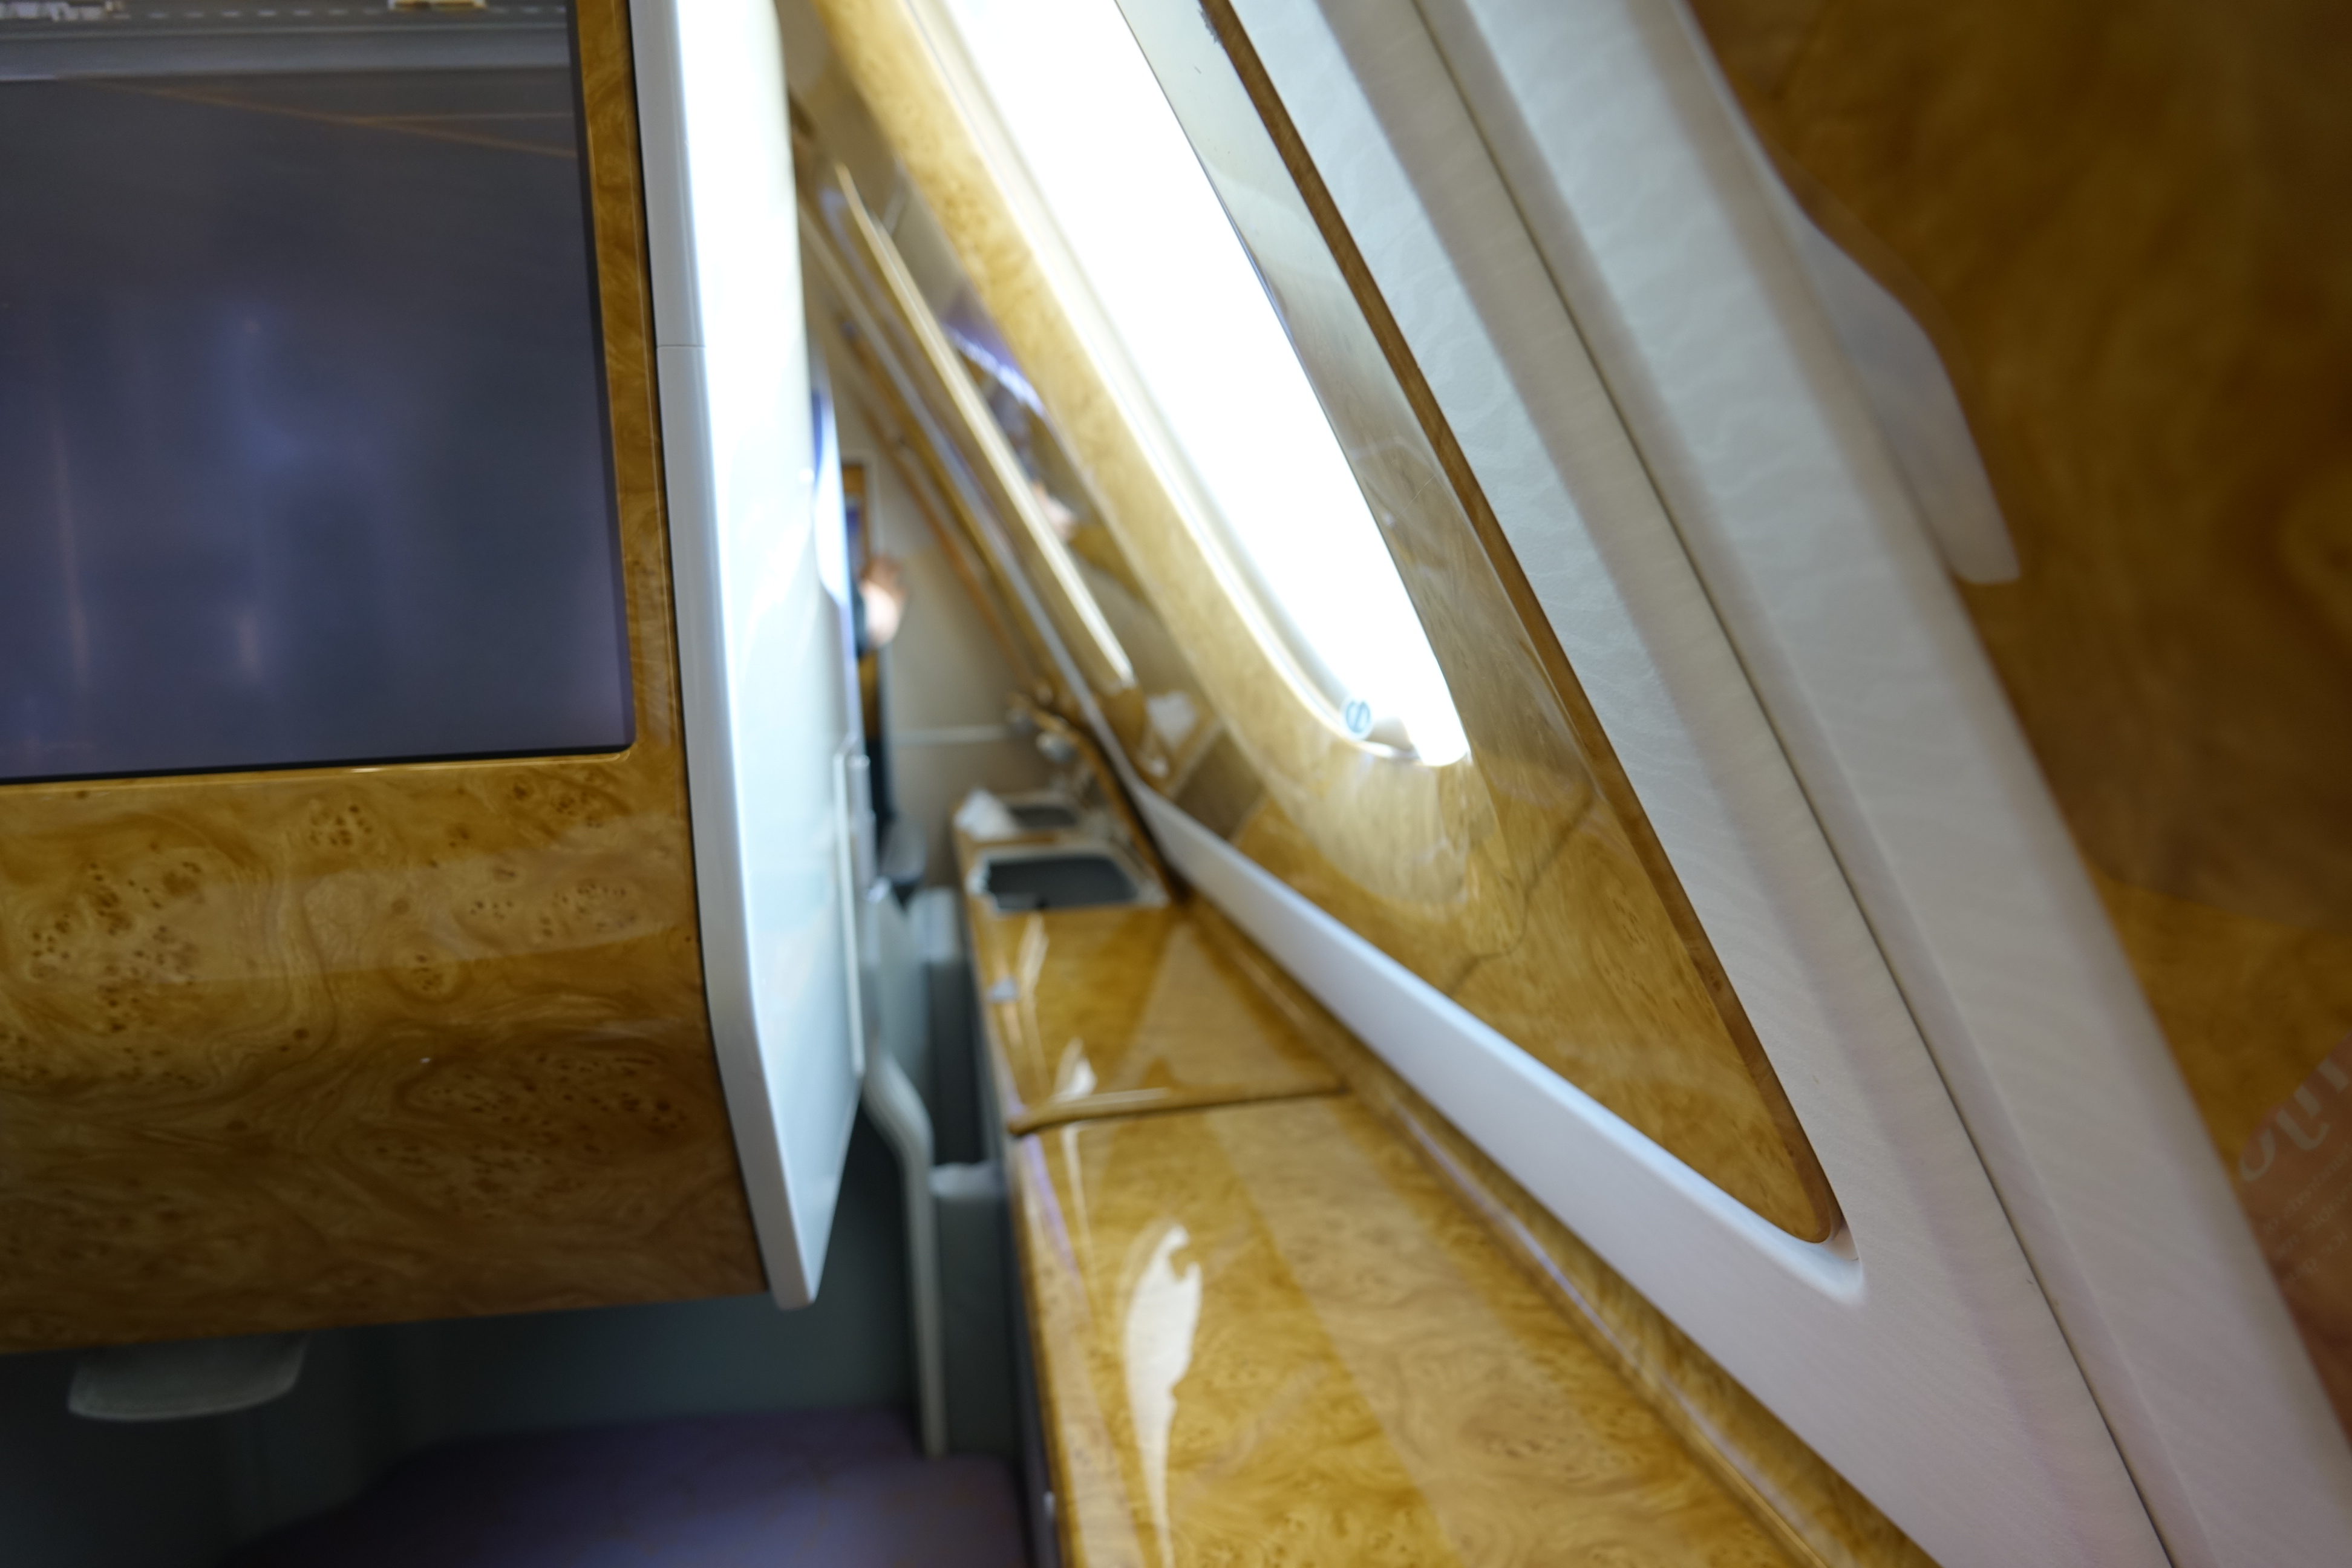 a window in a plane